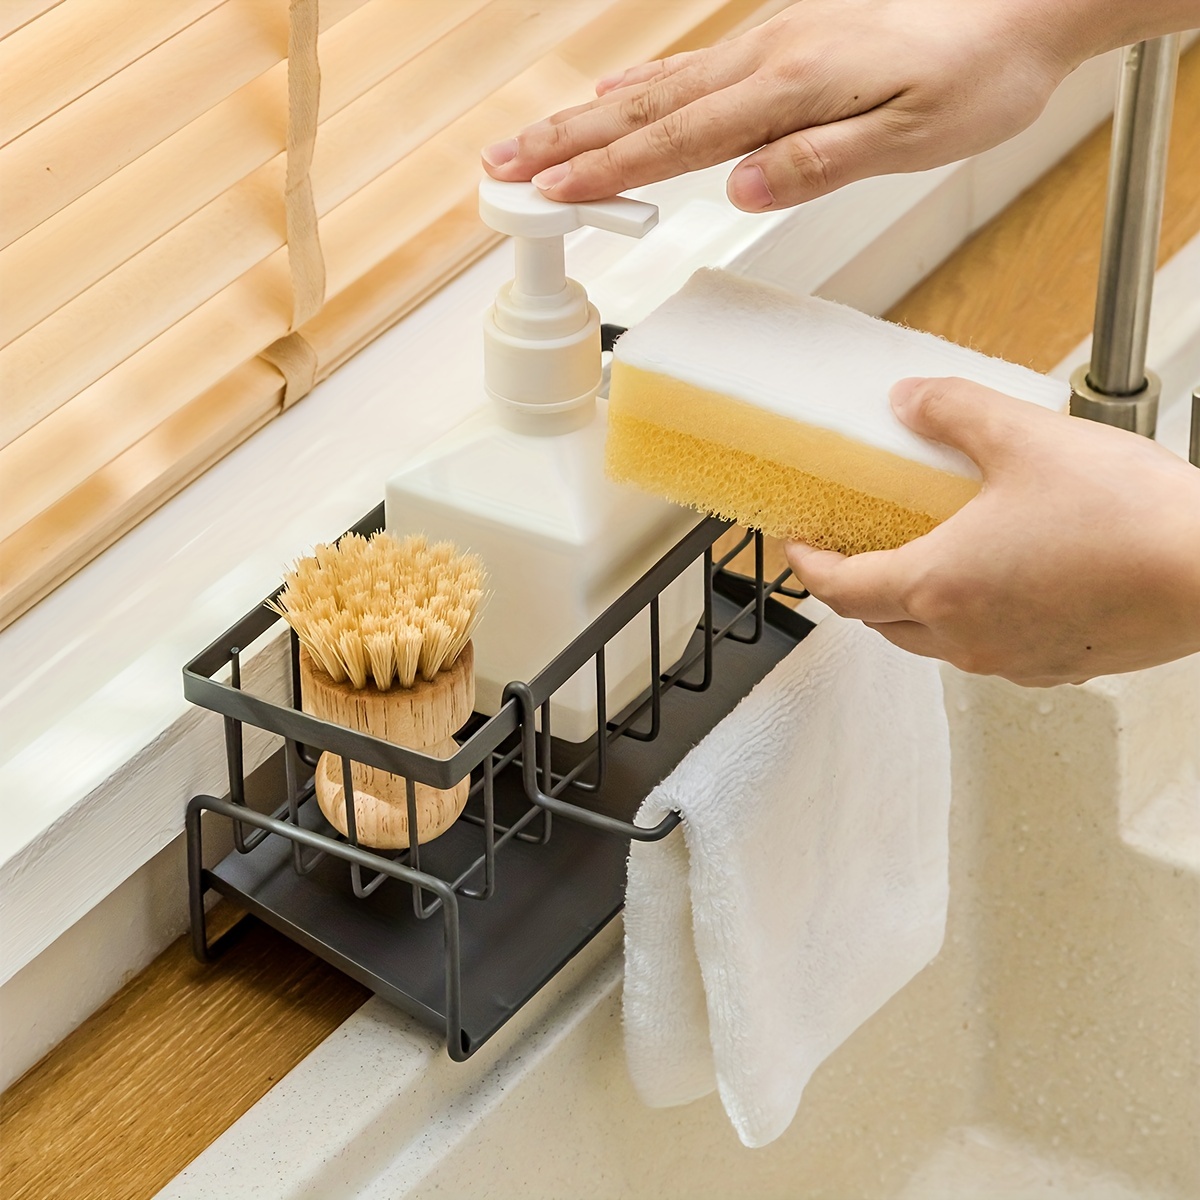 Sink Caddy Sponge Holder, Kitchen Sink Organizer For Dish Rag Soap